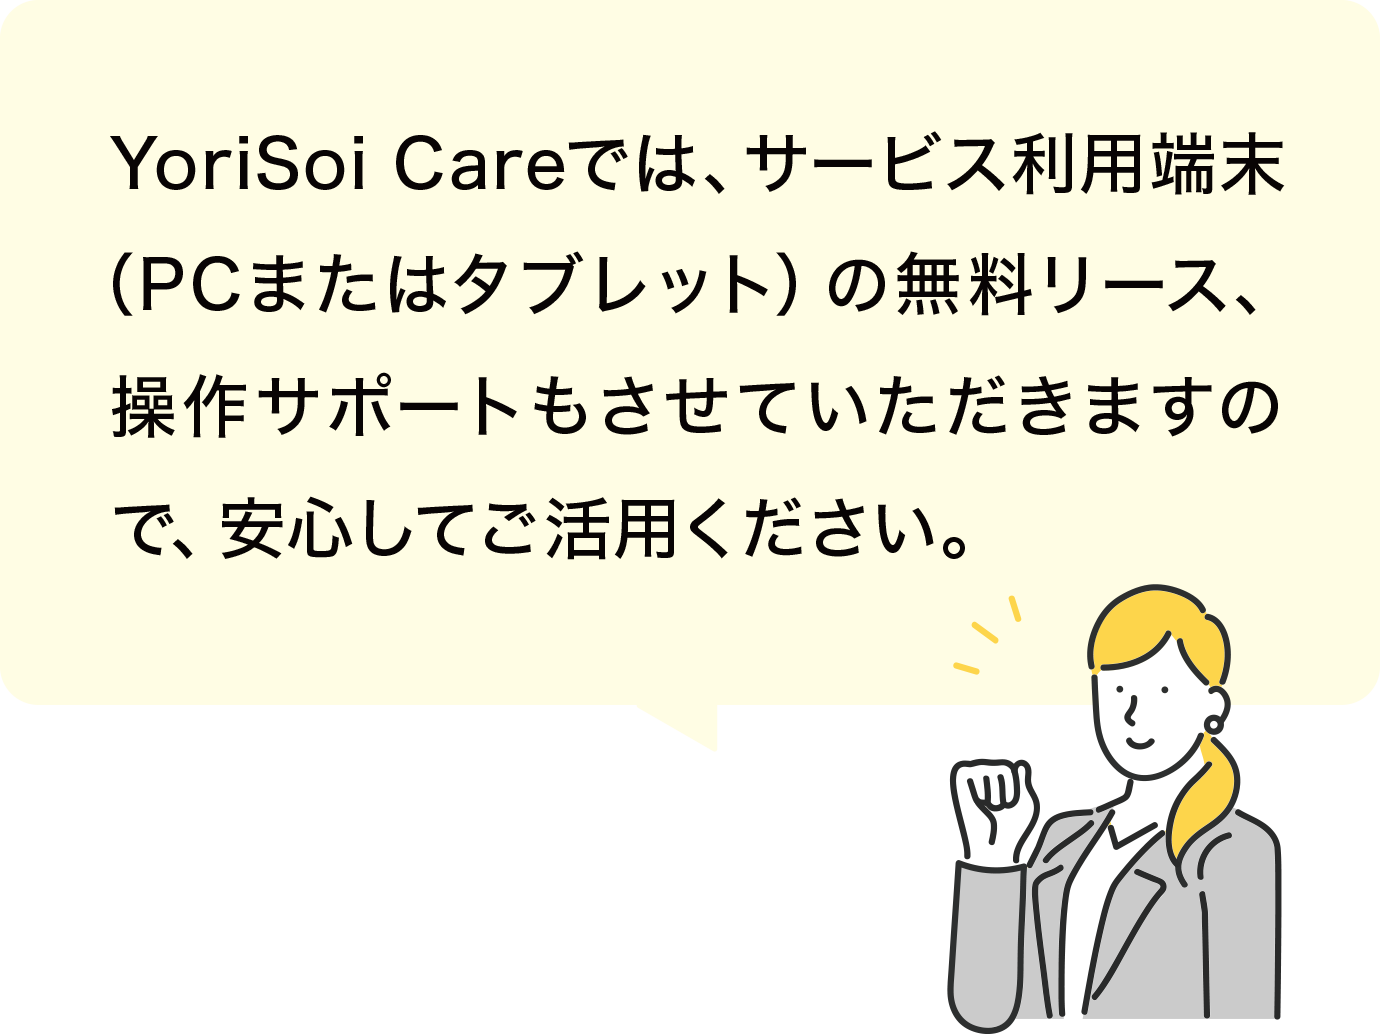 YoriSoi Careでは、サービス利用端末（PCまたはタブレット）の無料リース、操作サポートもさせていただきますので、安心してご活用ください。